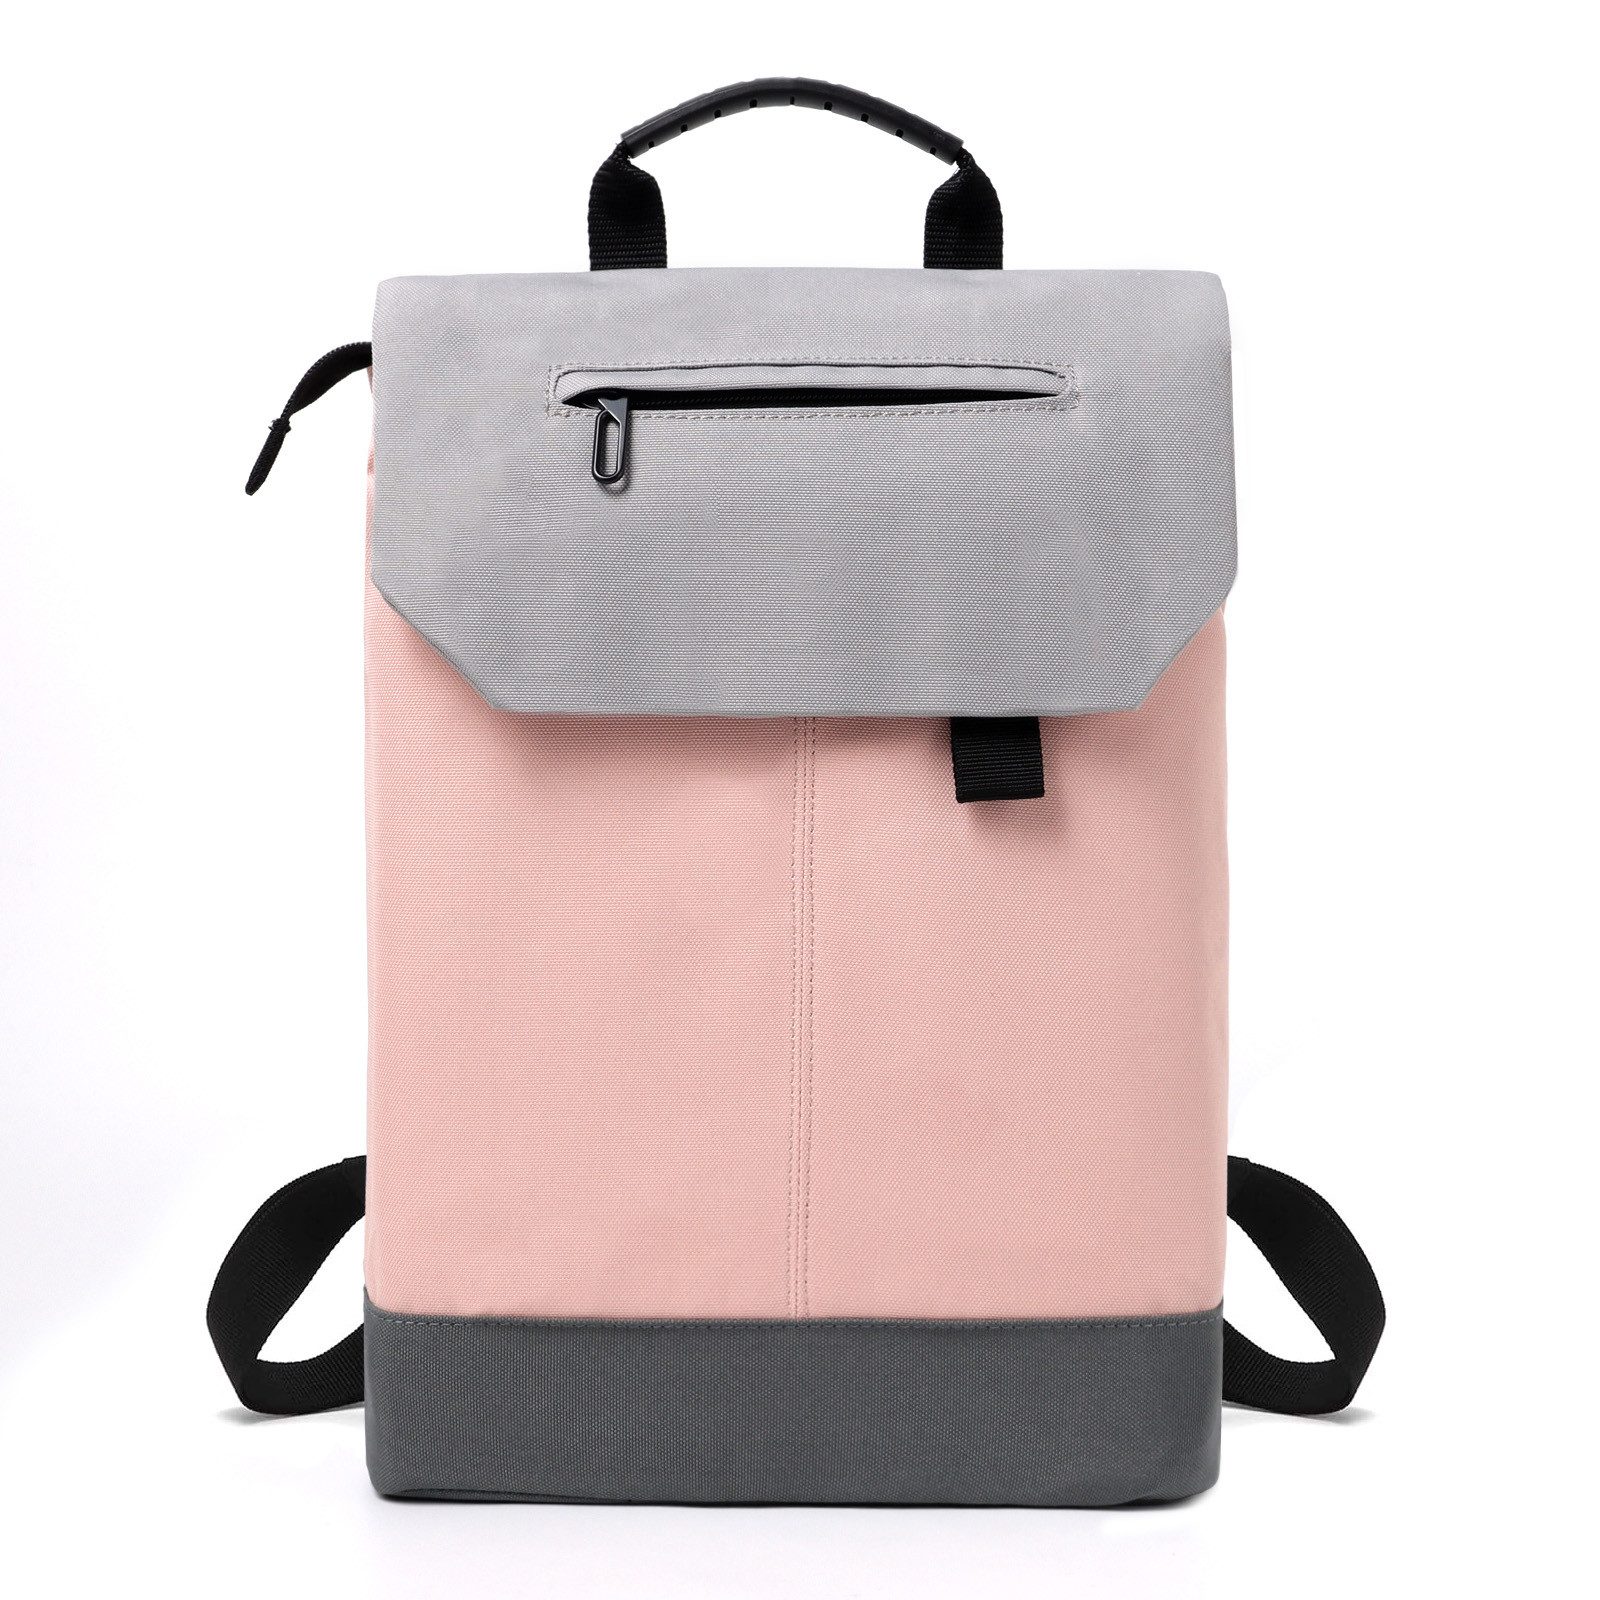 TAN.TOMI Freizeitrucksack Rucksack Damen Elegant Daypack Wasserdichter Tagesrucksack, mit Laptopfach 15.6Zoll & Anti Diebstahl Tasche für Reise, Uni, Schule